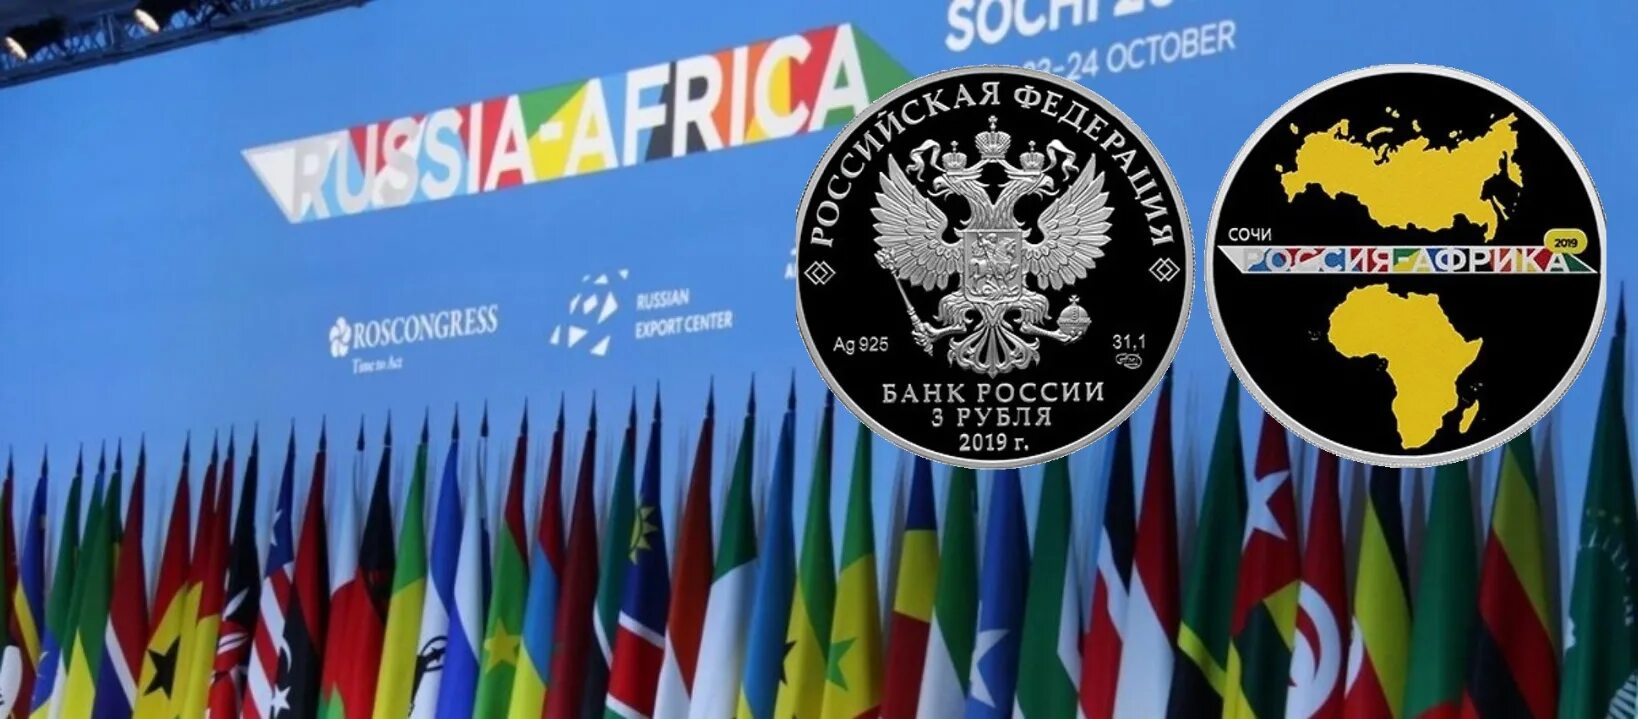 Саммит 2023 россия. Саммит Россия Африка 2019 Сочи. Саммит Россия Африка лого. Саммит Россия Африка 2023 логотип. Саммит "Россия - Африка" в Сочи 2021.